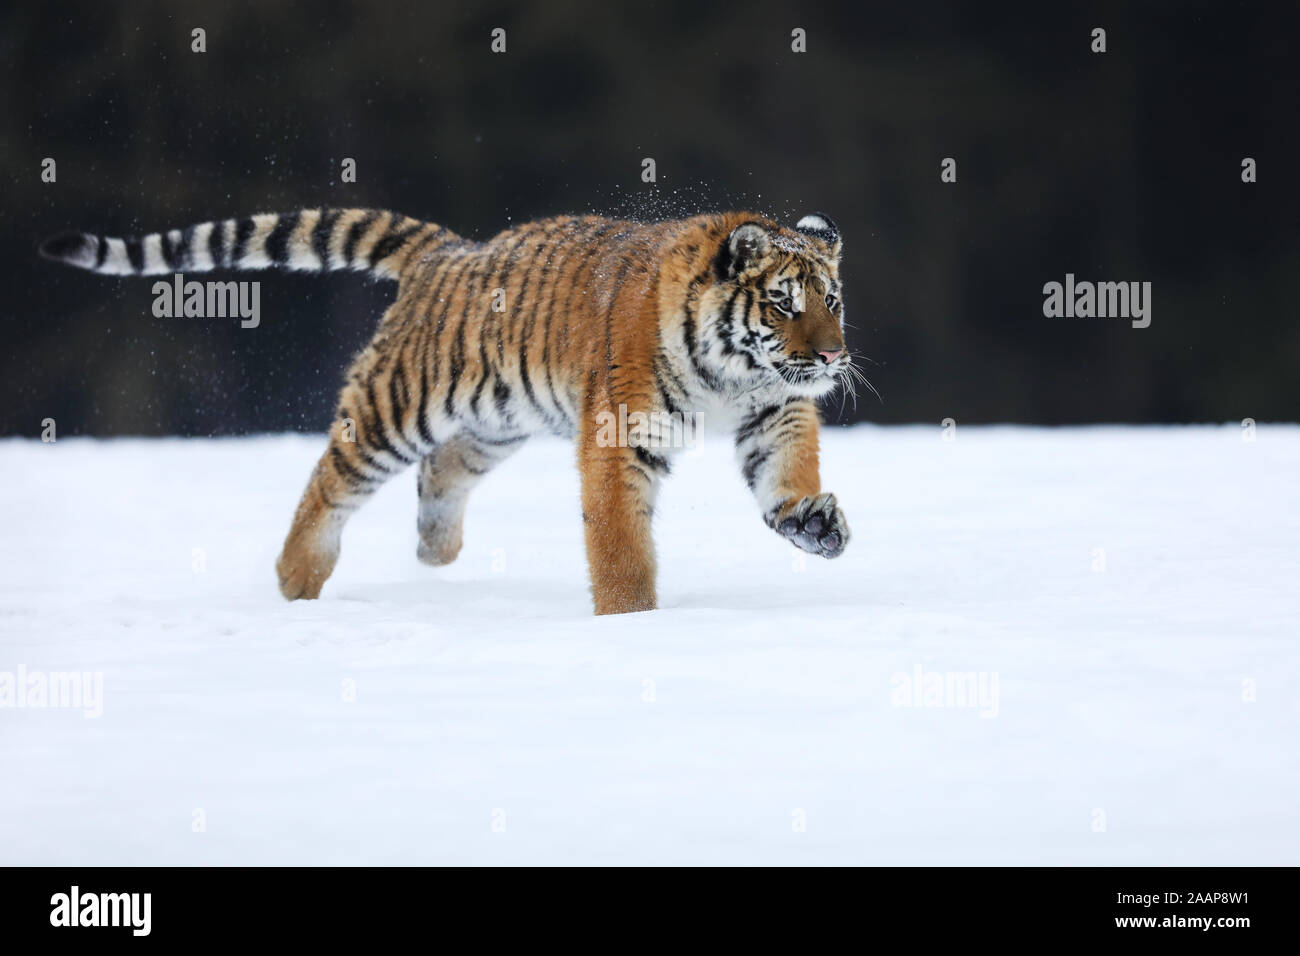 Amur Tiger laufen. Schöne, dynamische und leistungsstarke Tier. Typische winter Umgebung. Taiga Russlands. Panthera tigris altaica Stockfoto